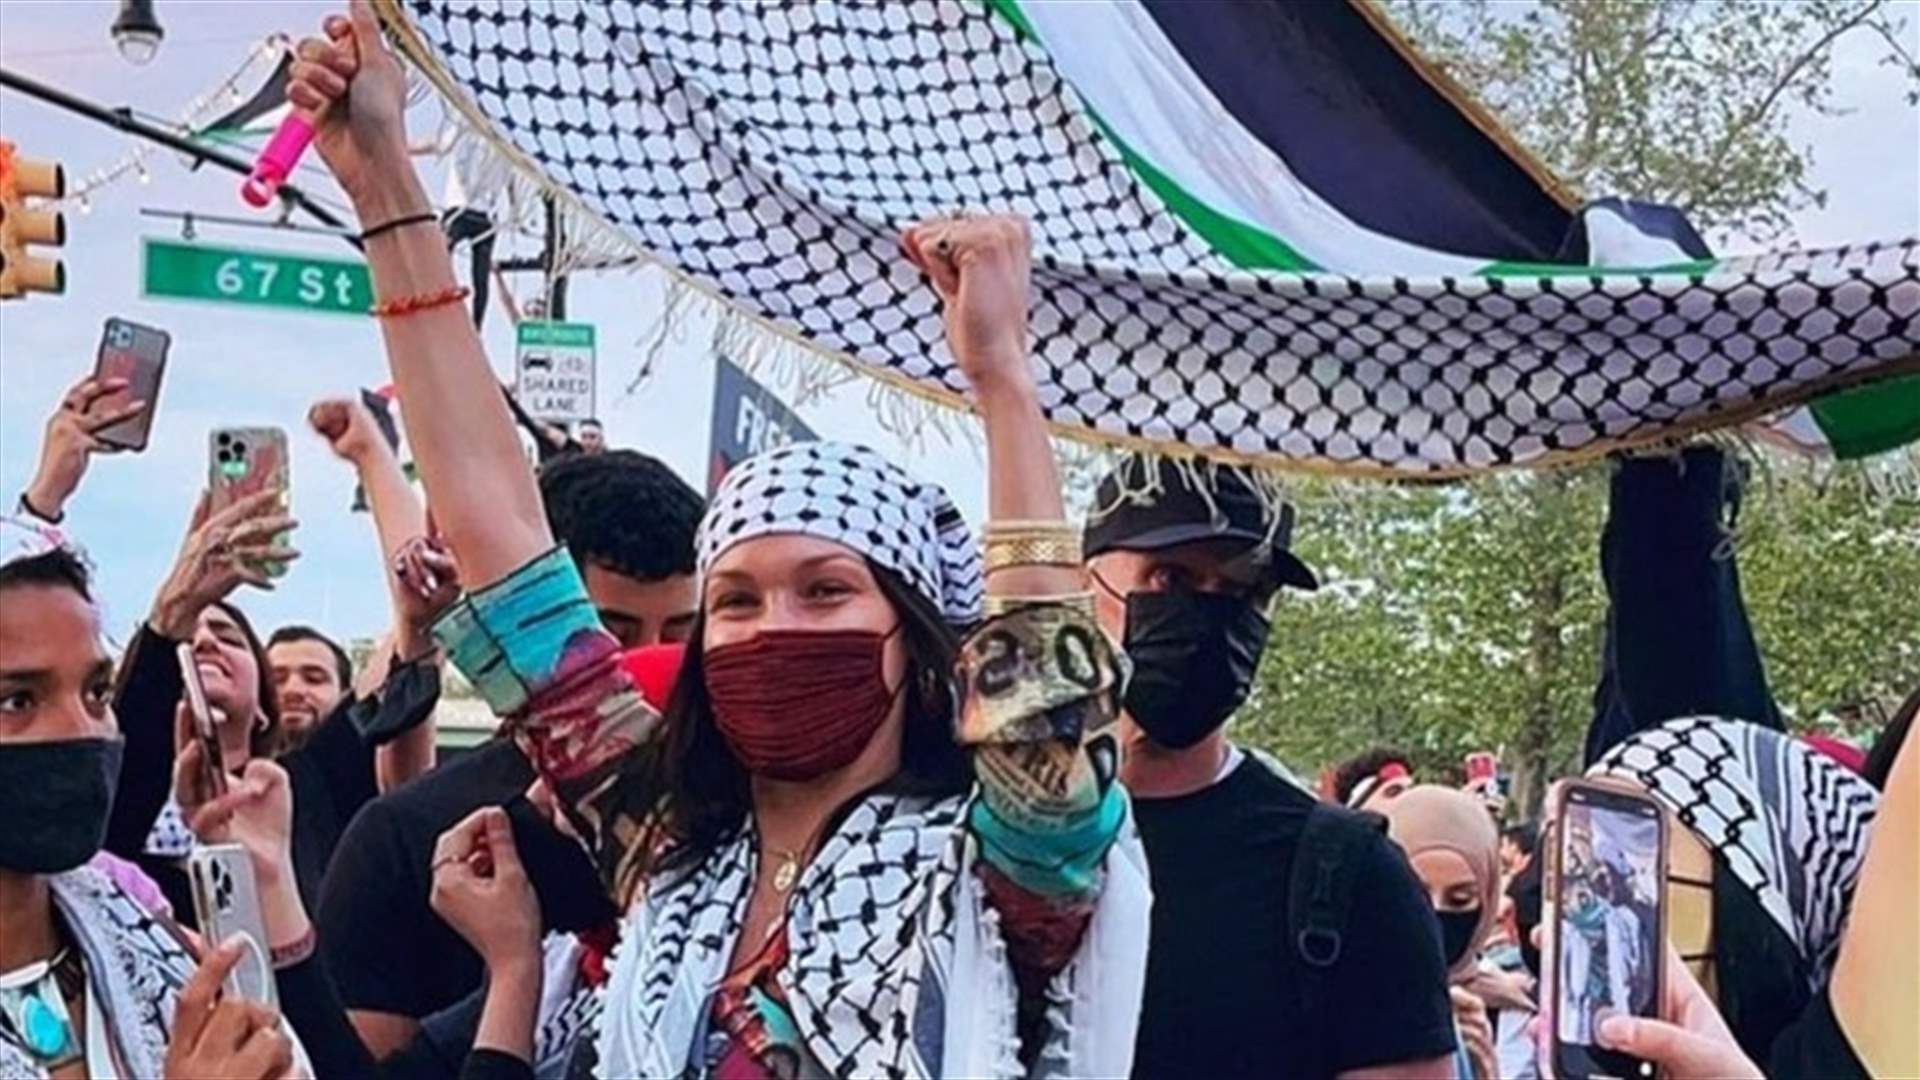 بيلا حديد تشارك بـ&quot;الكفية&quot; الفلسطينية في تظاهرة بنيويورك... واسرائيل تحتج!  (صور وفيديو)